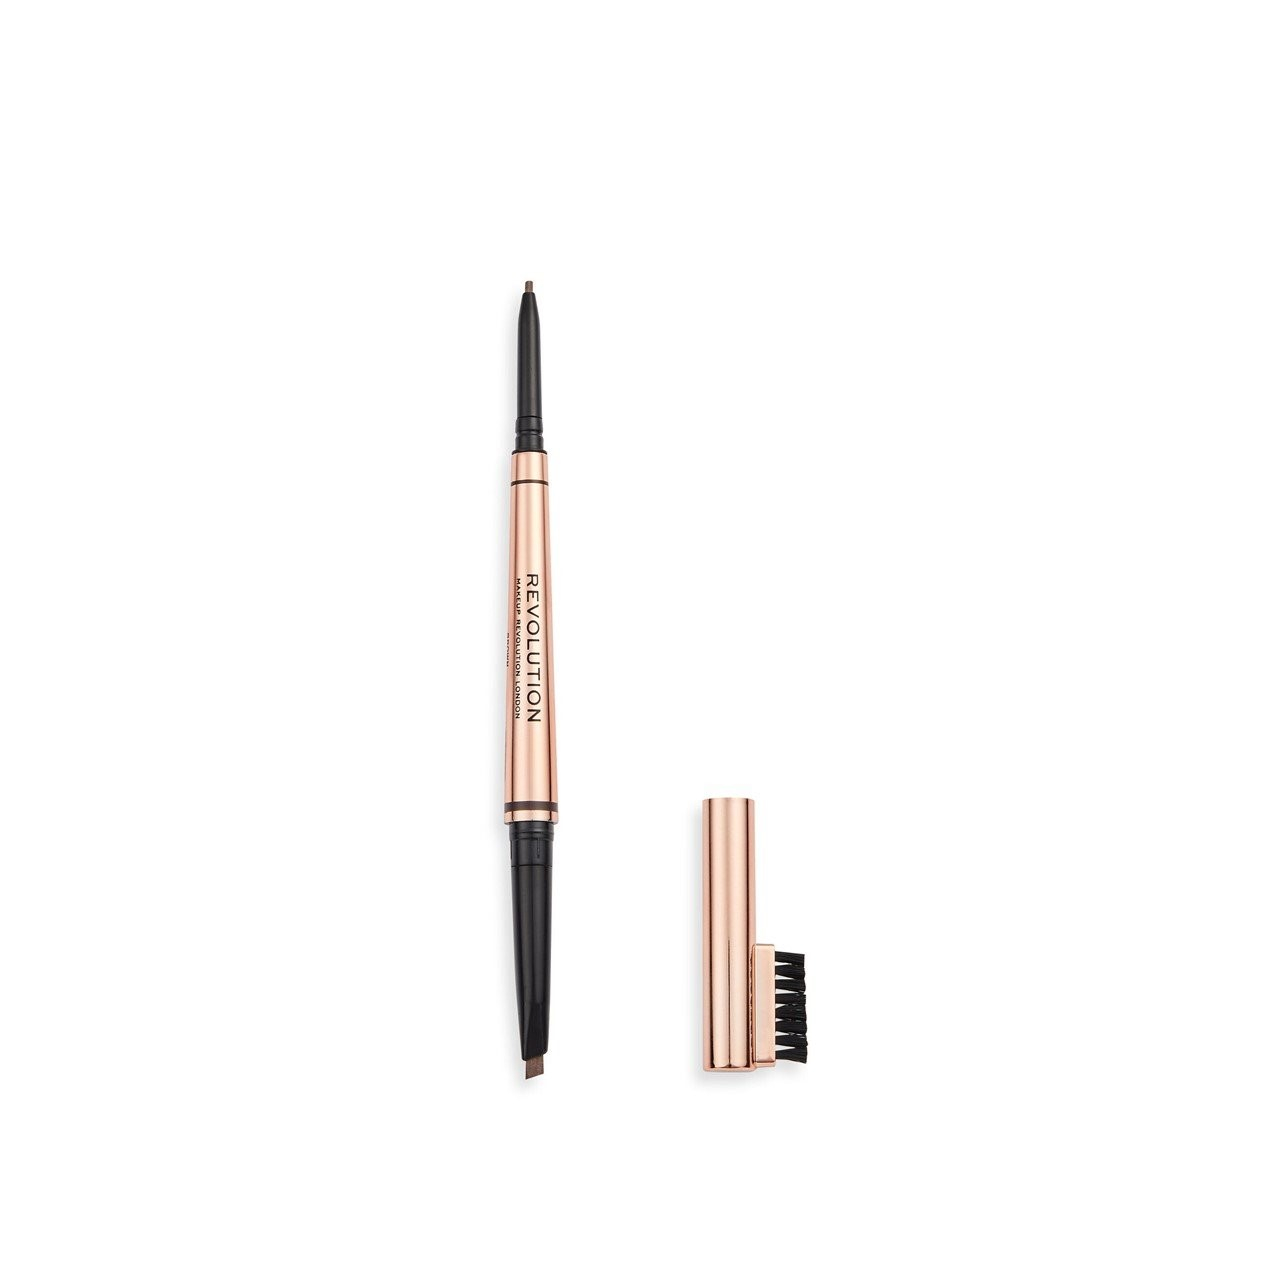 Best affordable makeup Makeup Revolution Balayage Duo Brow Pencil
